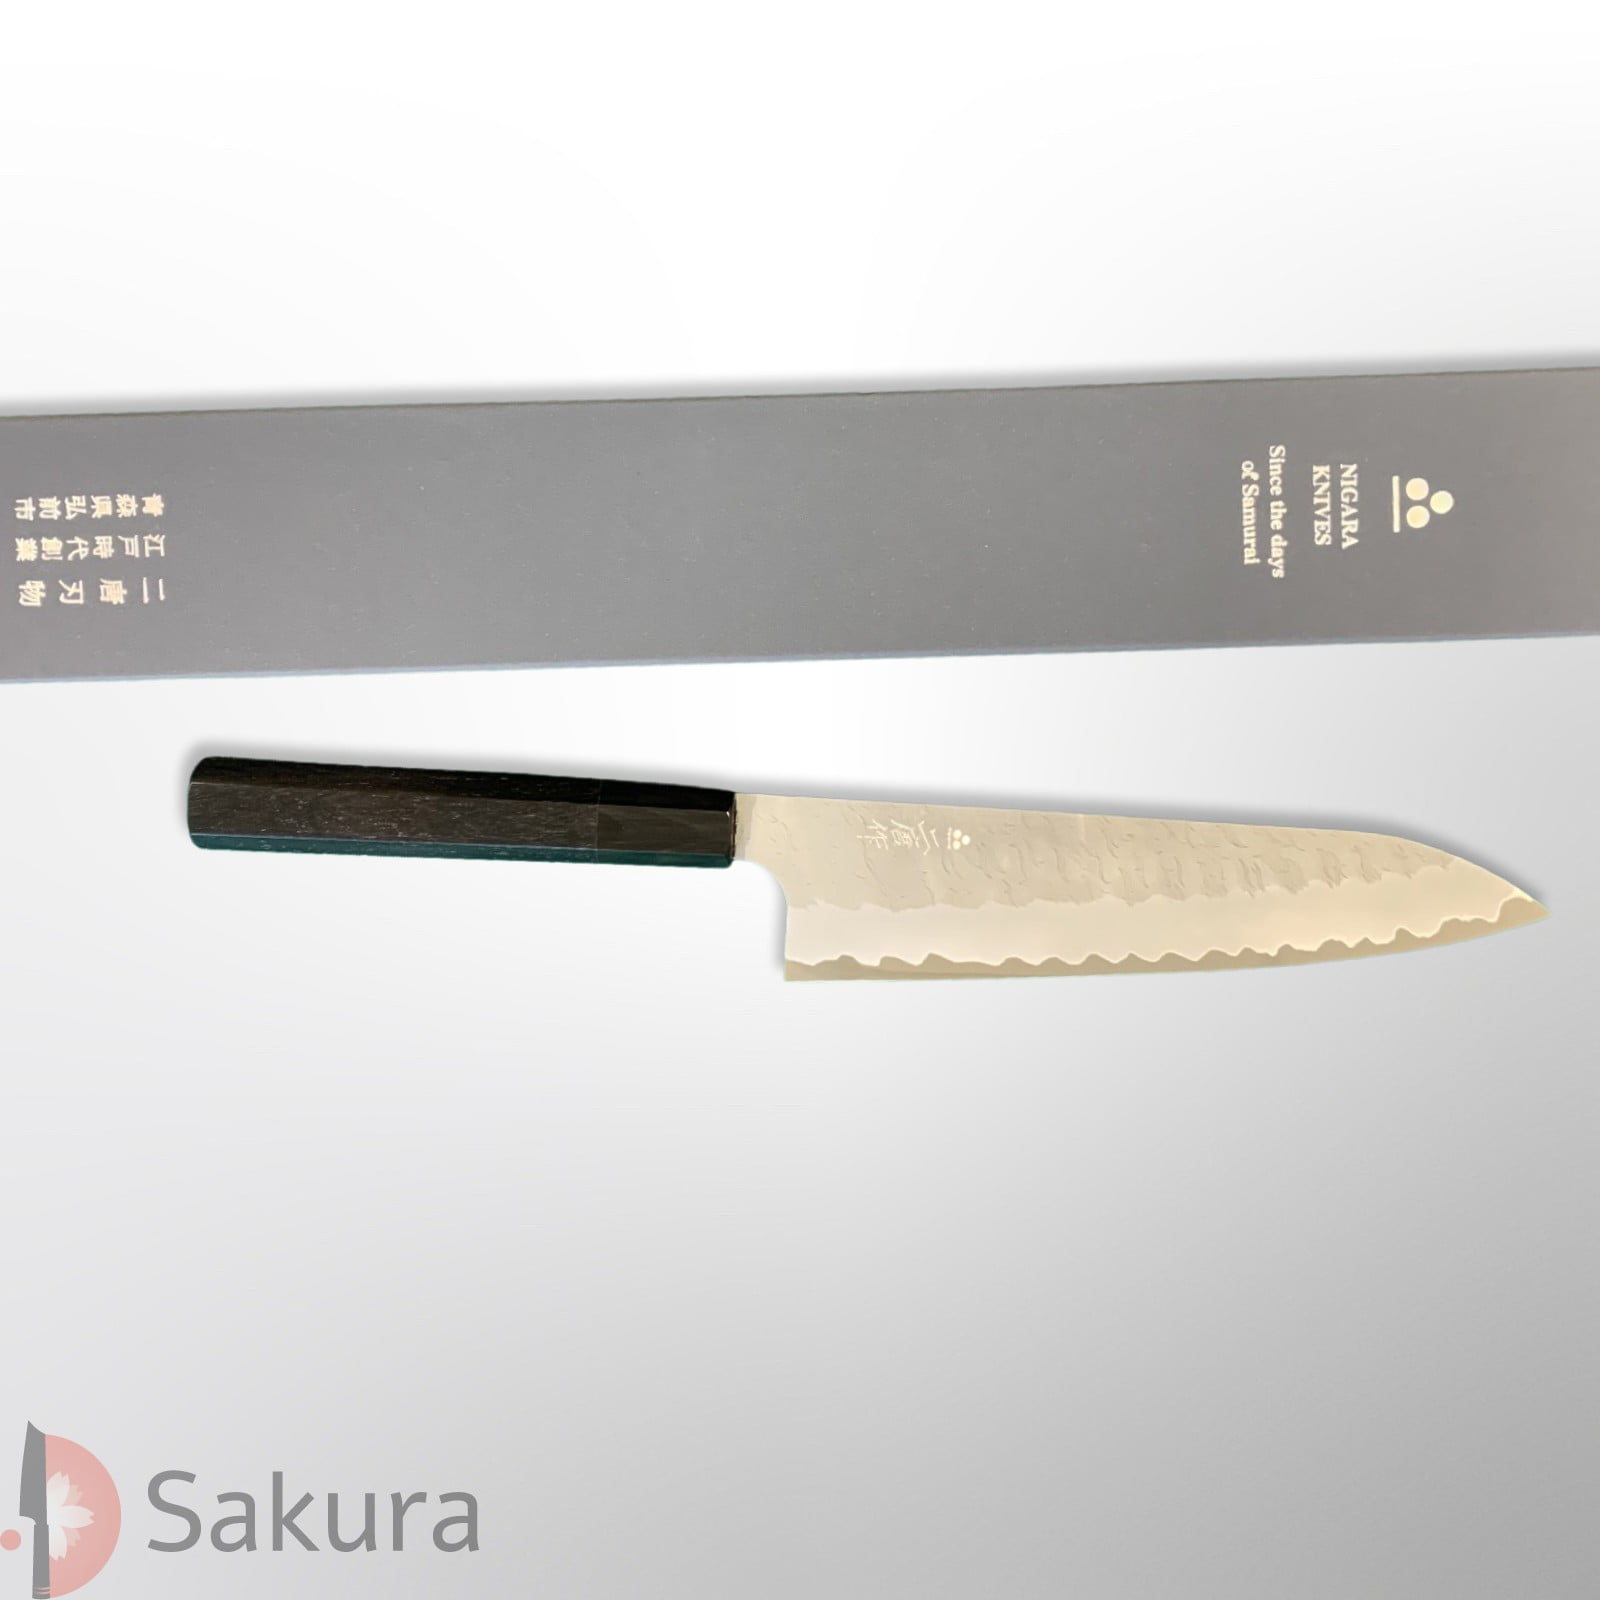 סכין שף רב-תכליתית גִּיוּטוֹ 210מ״מ מחושלת בעבודת יד 3 שכבות: פלדת פחמן יפנית מתקדמת Aogami Super גימור מט מלוטש עם ריקוע פטיש ניגארה יפן SKNIGAASMTGYU2116